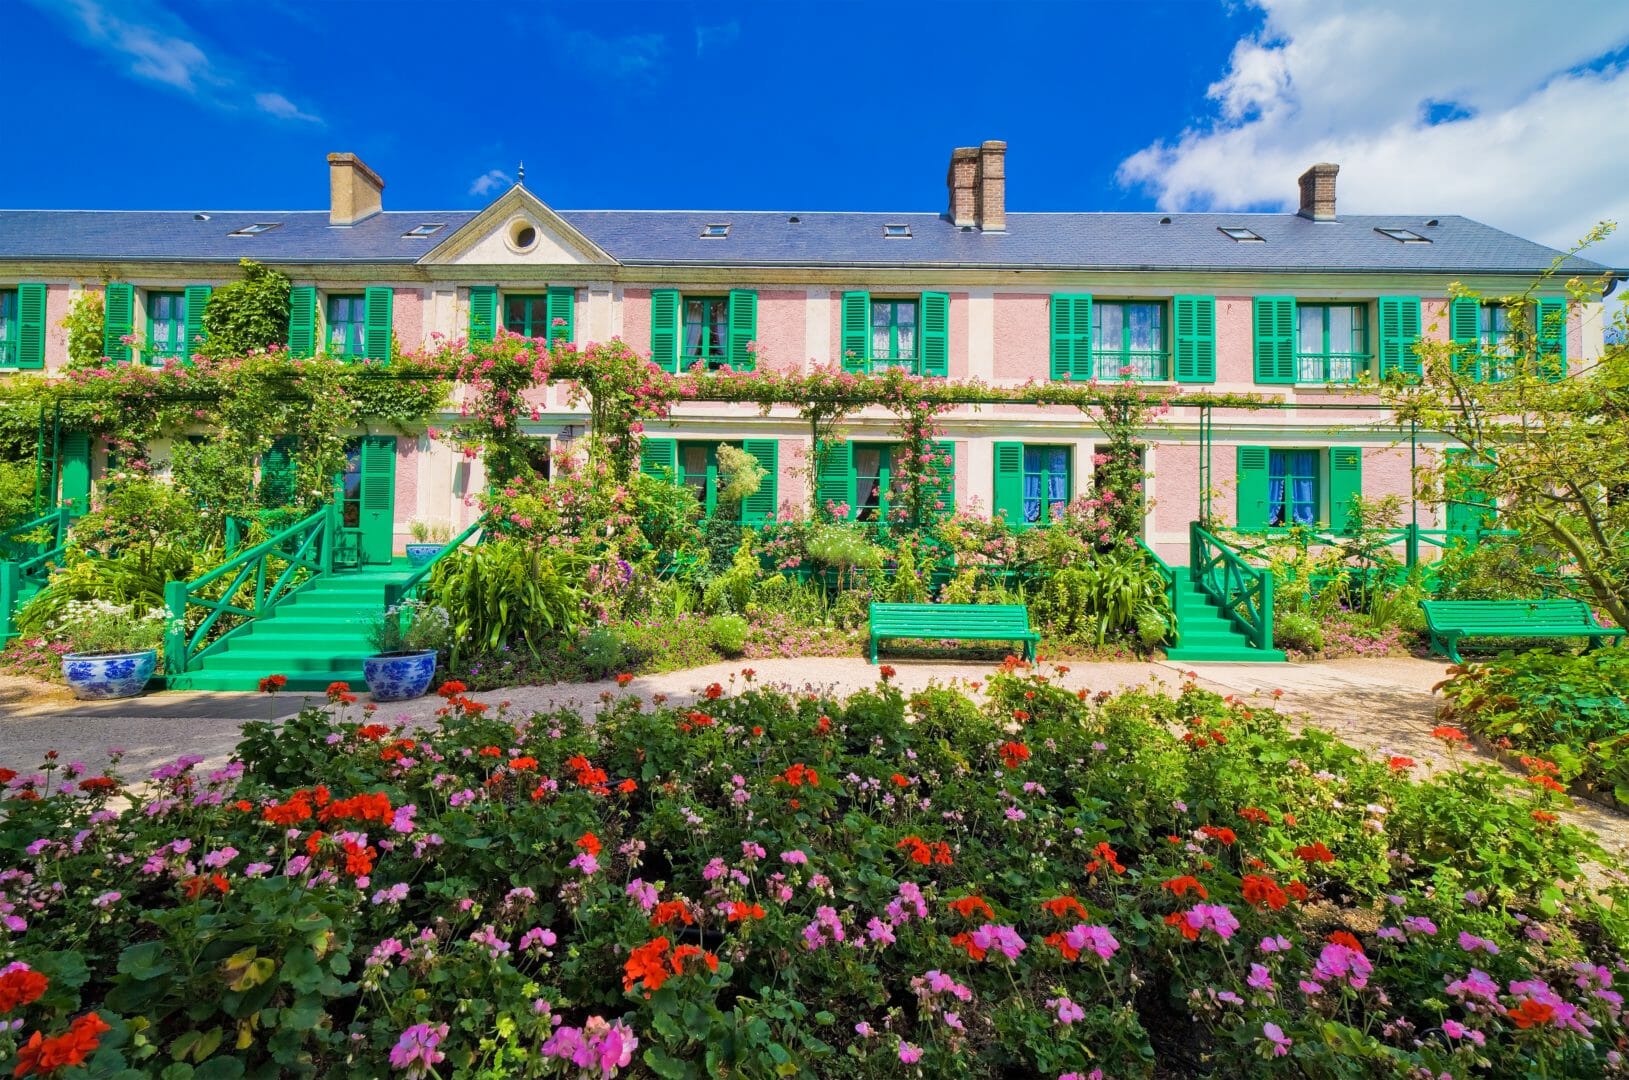 Maison de Claude Monet à Giverny, France